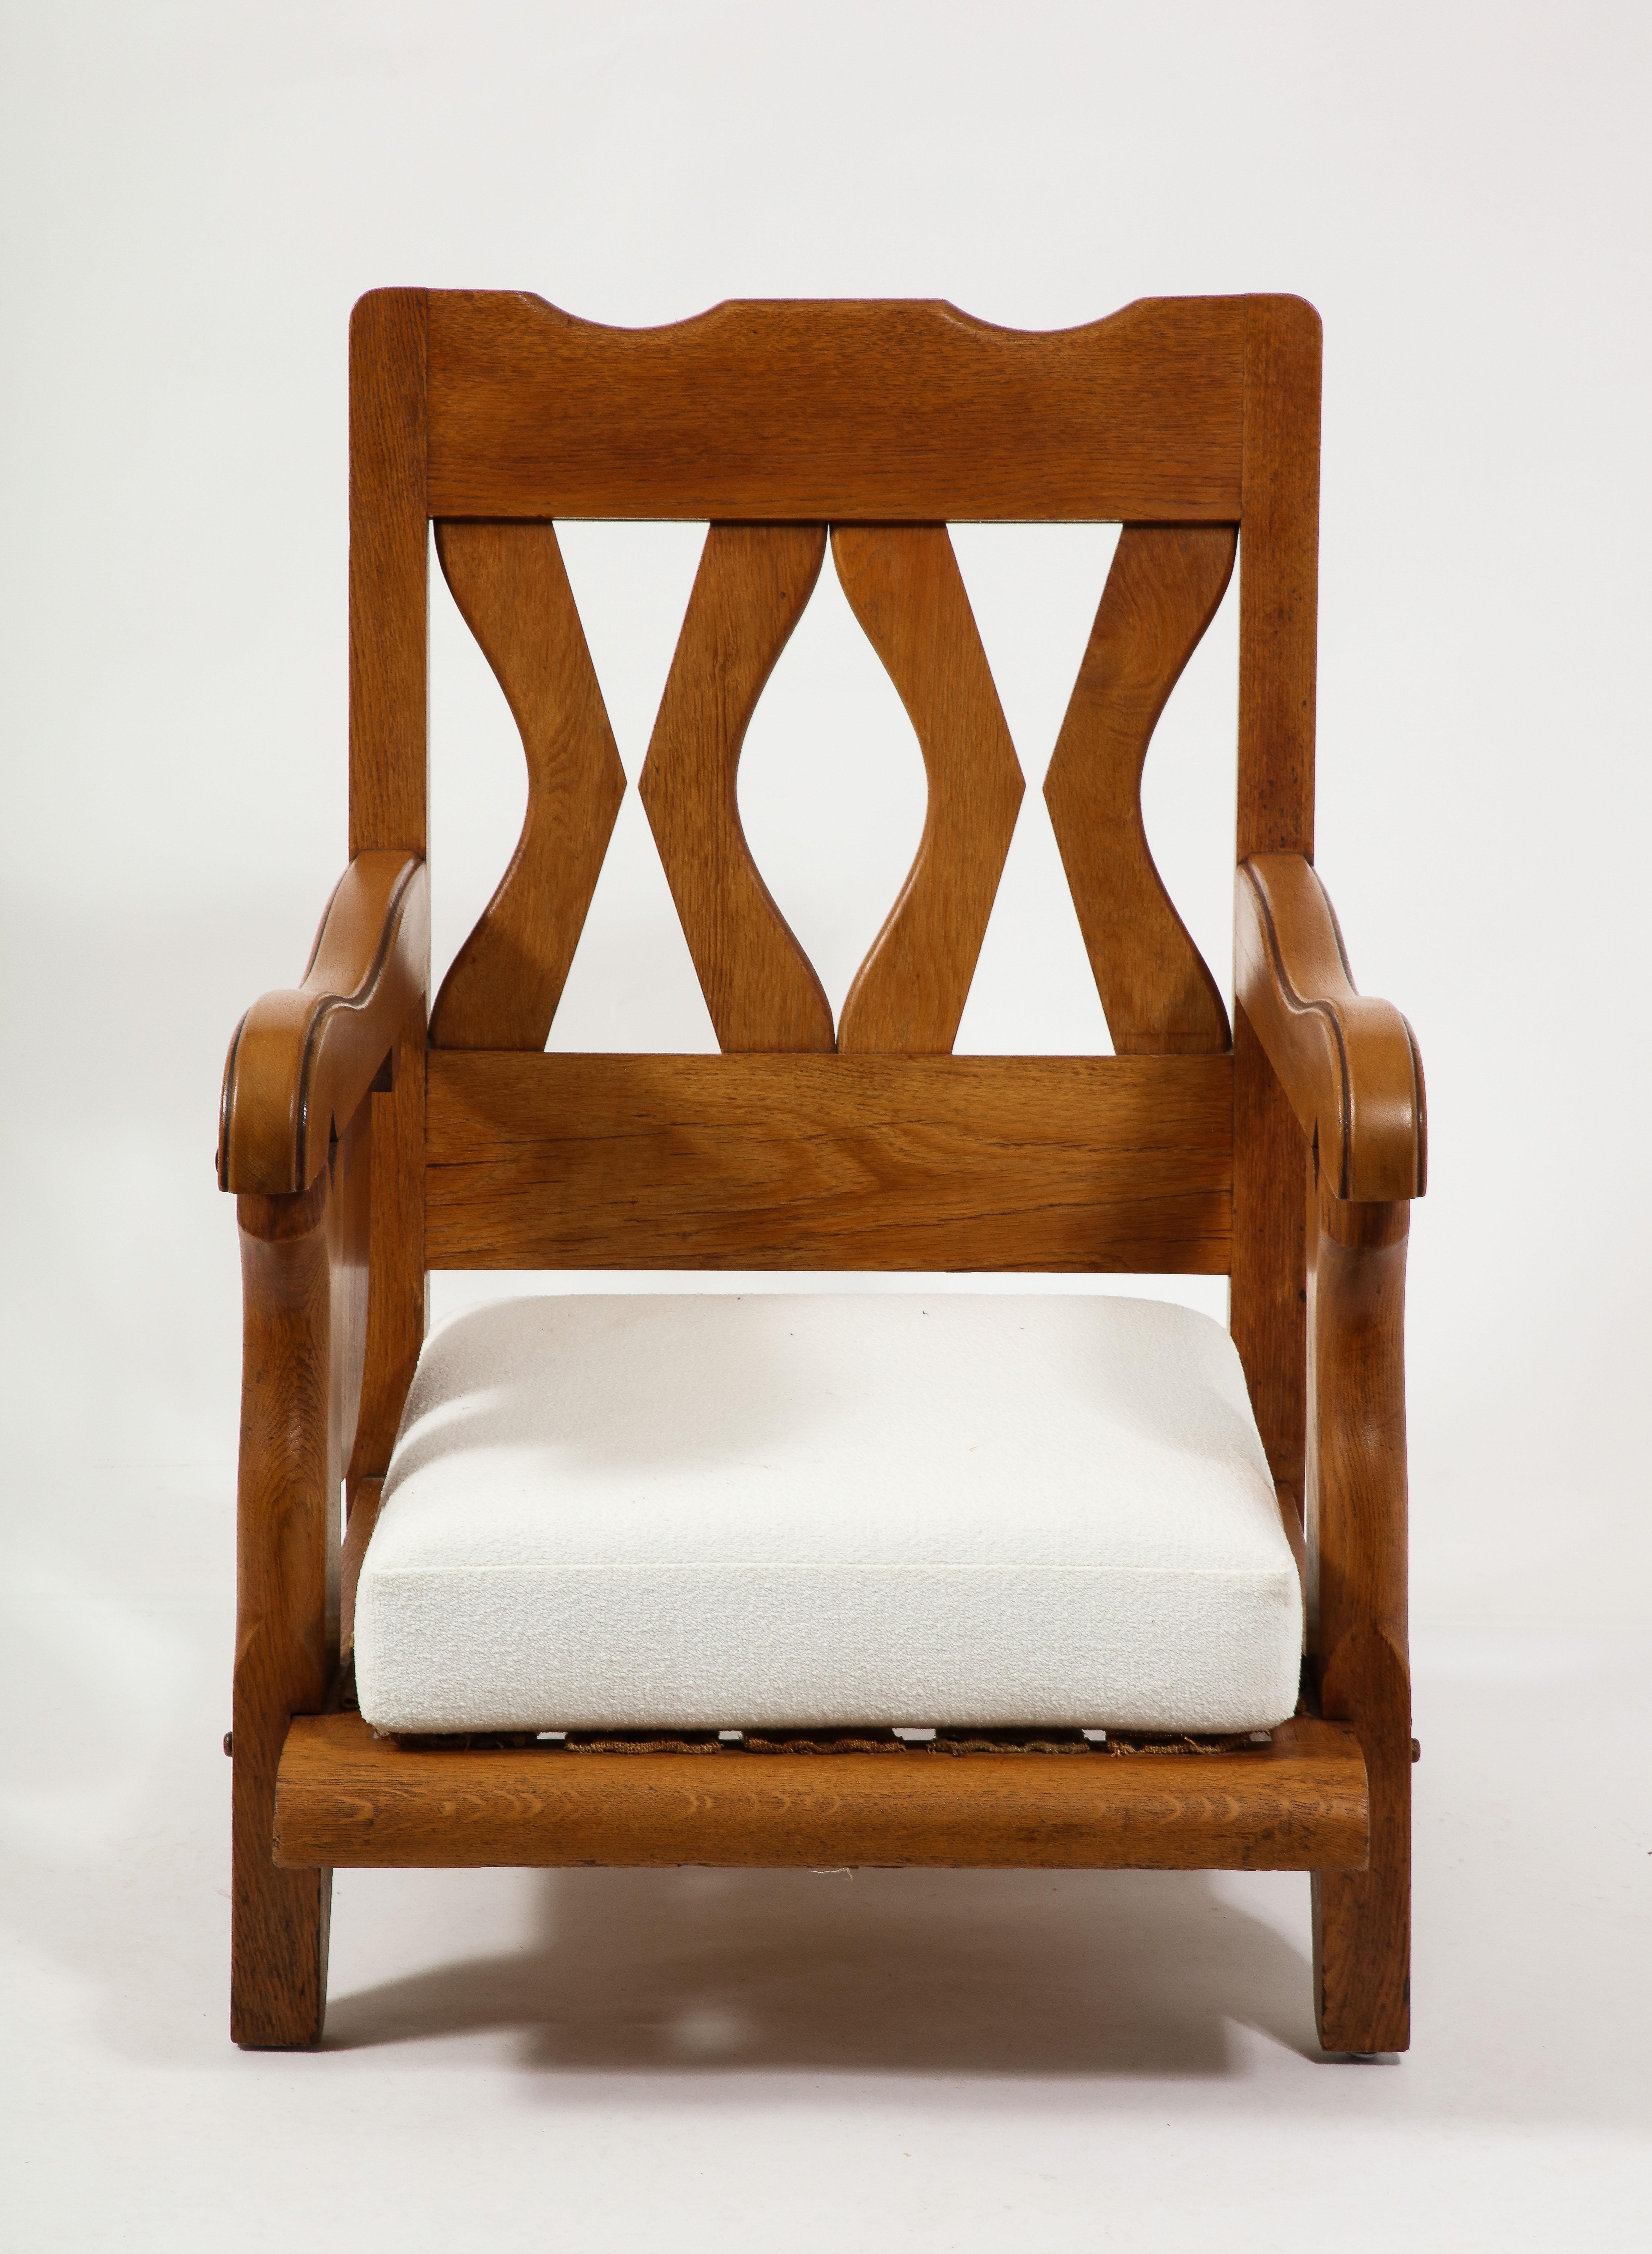 Grande chaise Gentleman en chêne avec un plateau à boissons pliable, une construction et une menuiserie élégantes.
La chaise a depuis été retapissée, de nouvelles photos seront bientôt disponibles.
